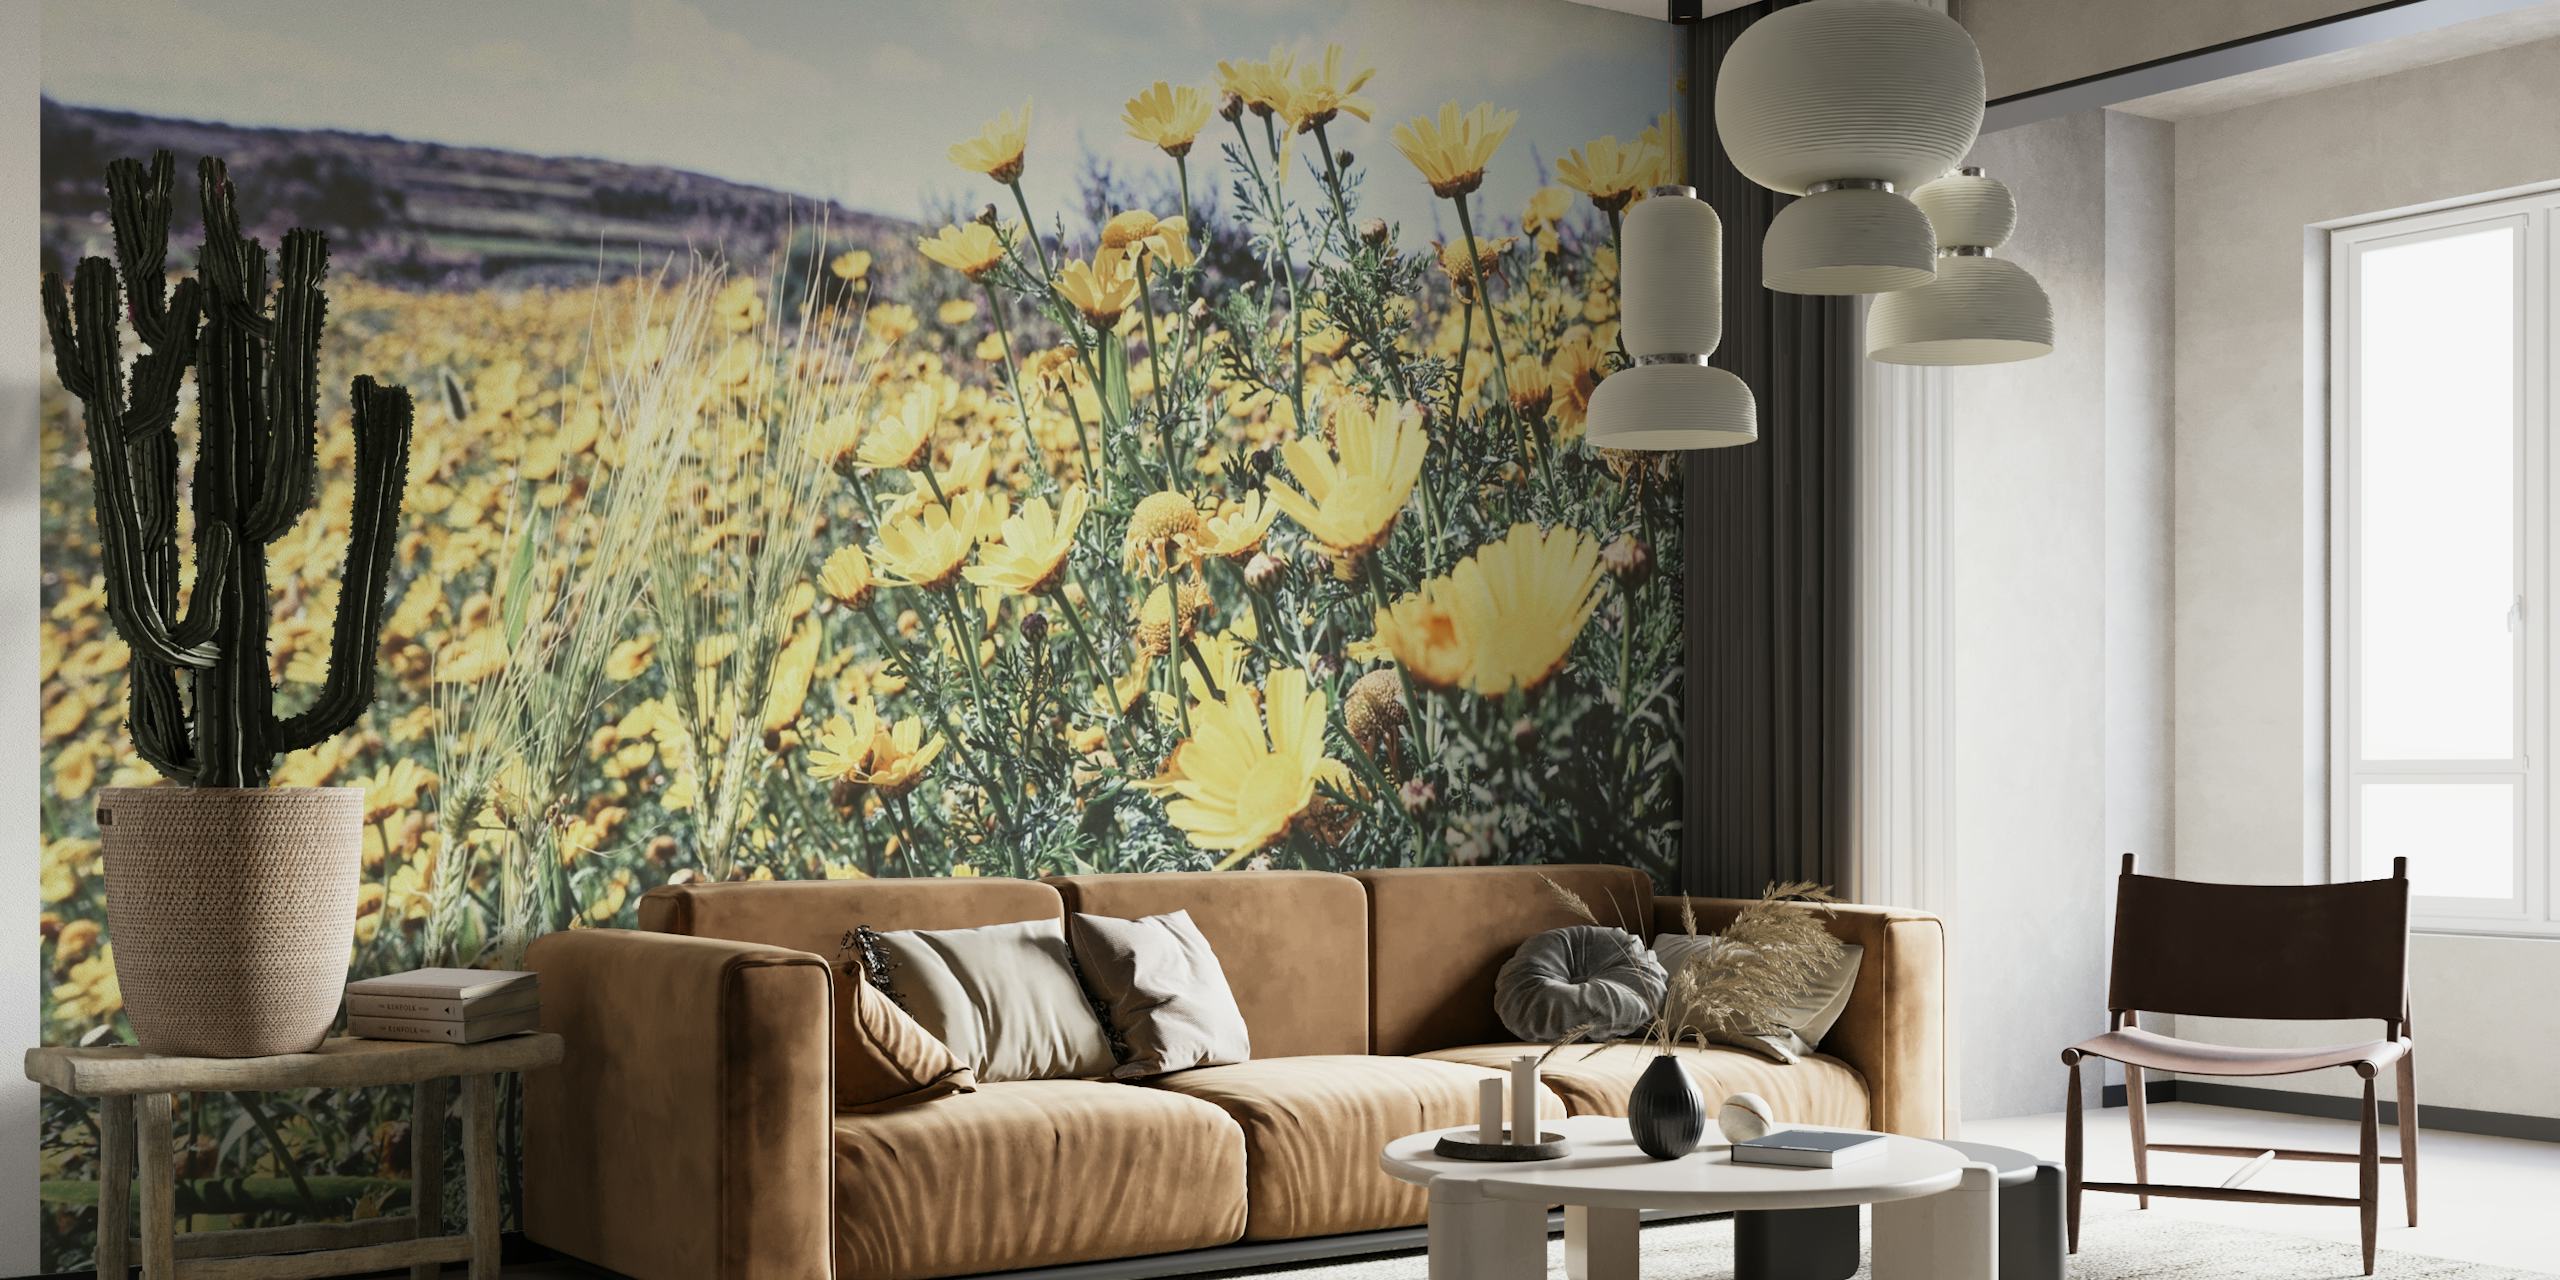 Fotomural vinílico de parede Soft Flower Field com flores silvestres amarelas e um prado ensolarado